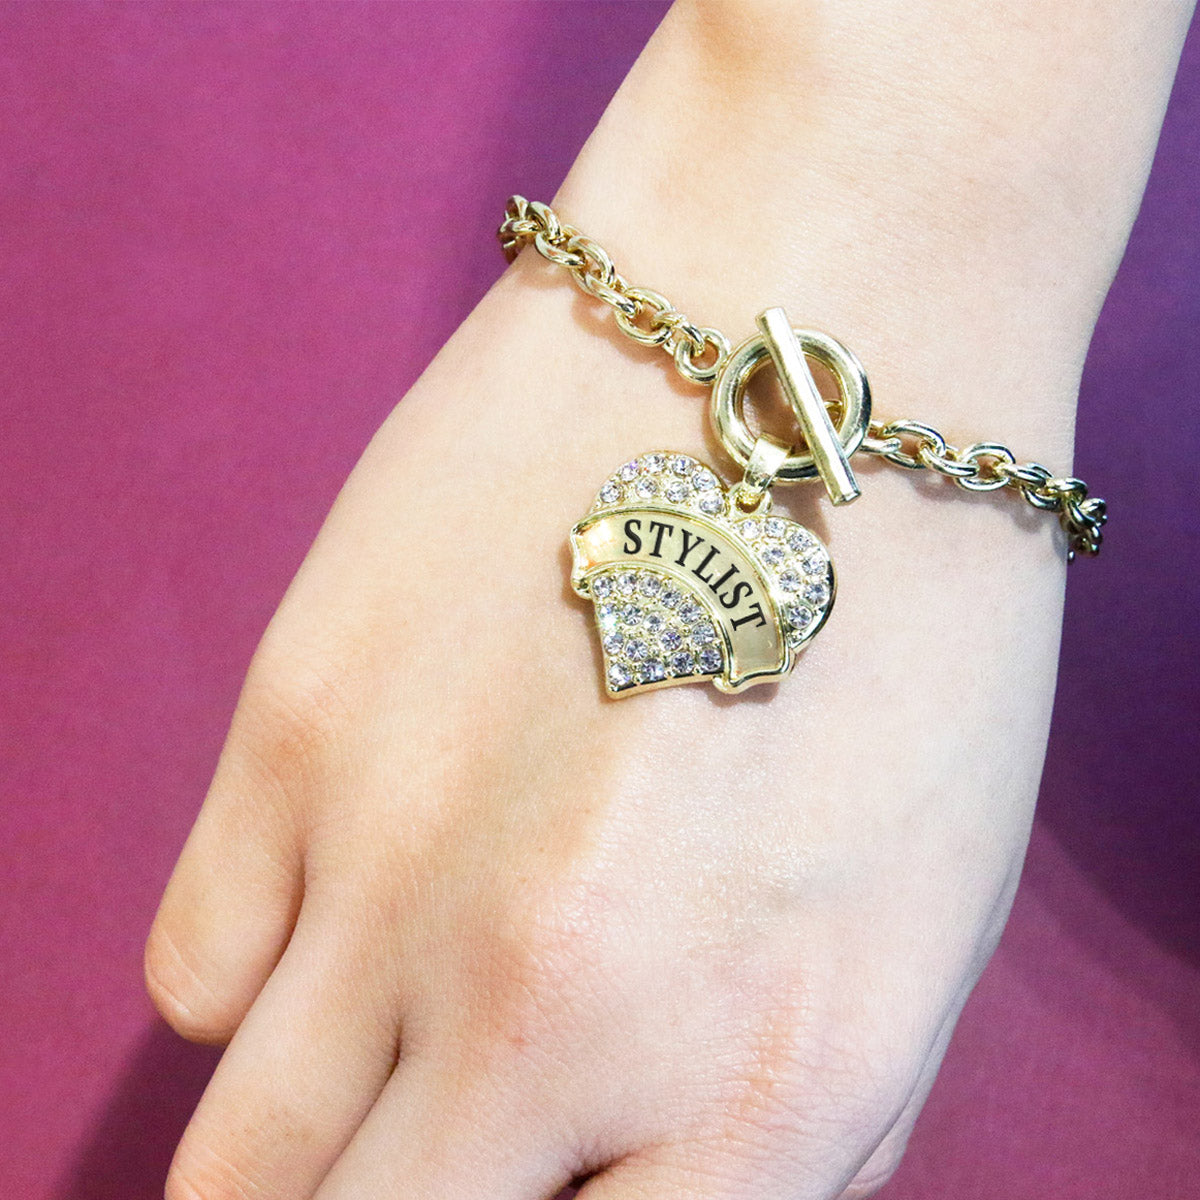 Gold Stylist Pave Heart Charm Toggle Bracelet